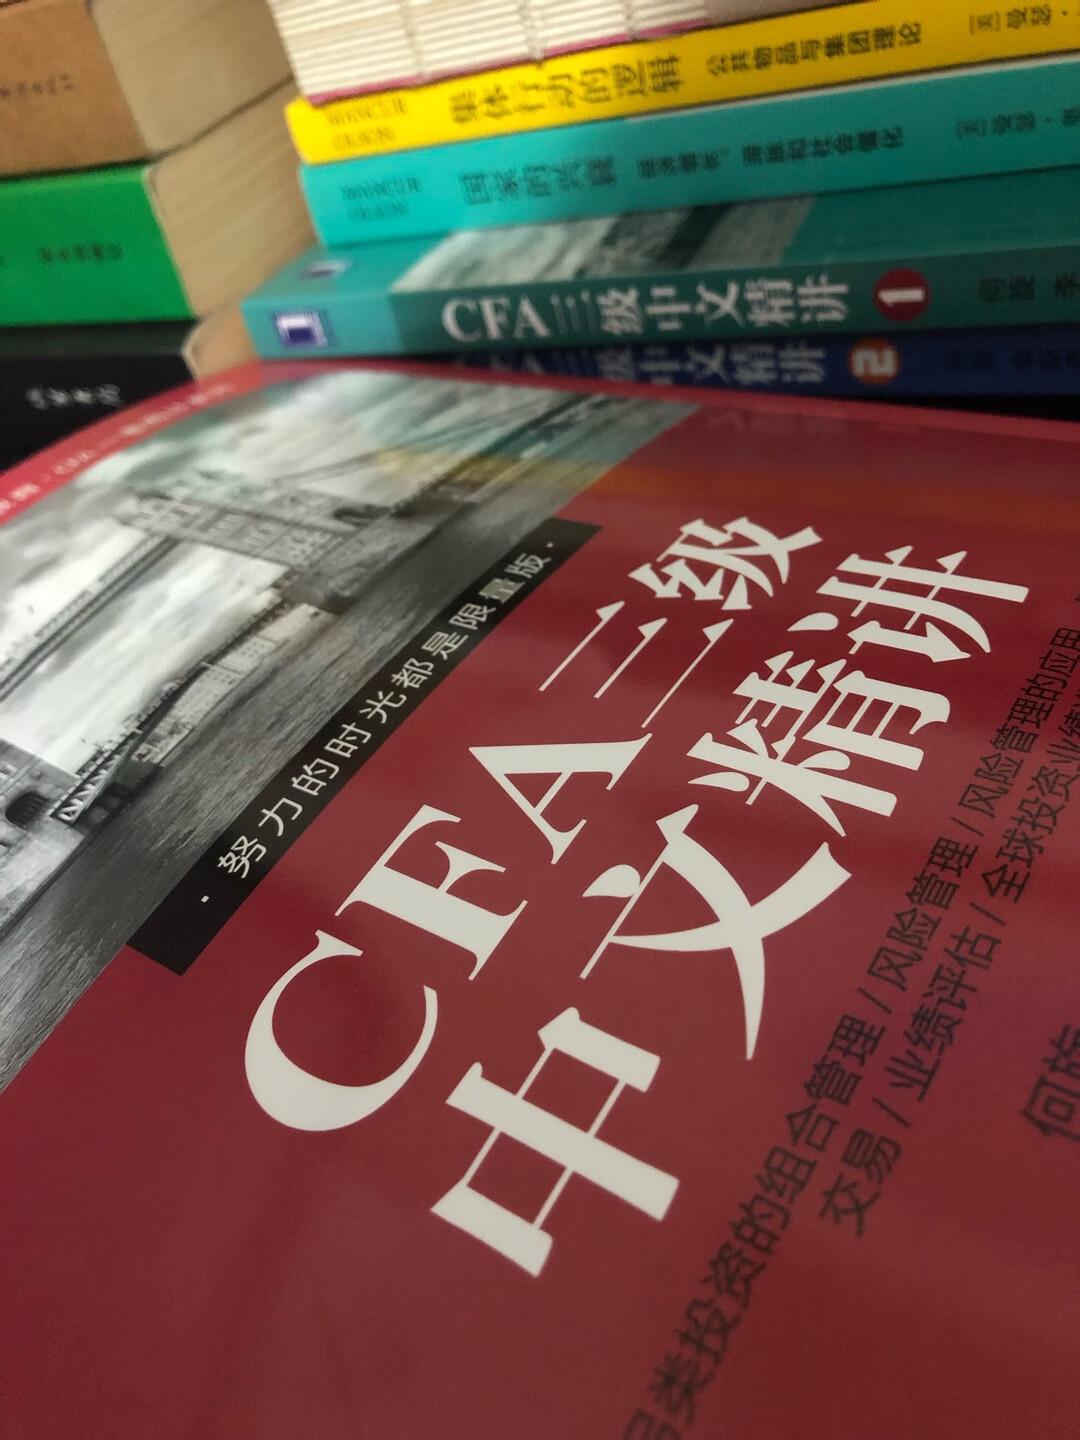 印刷的质量很好，作者很用心，原版肯的神魂颠倒、辅助中文版希望能对原版教材加深理解